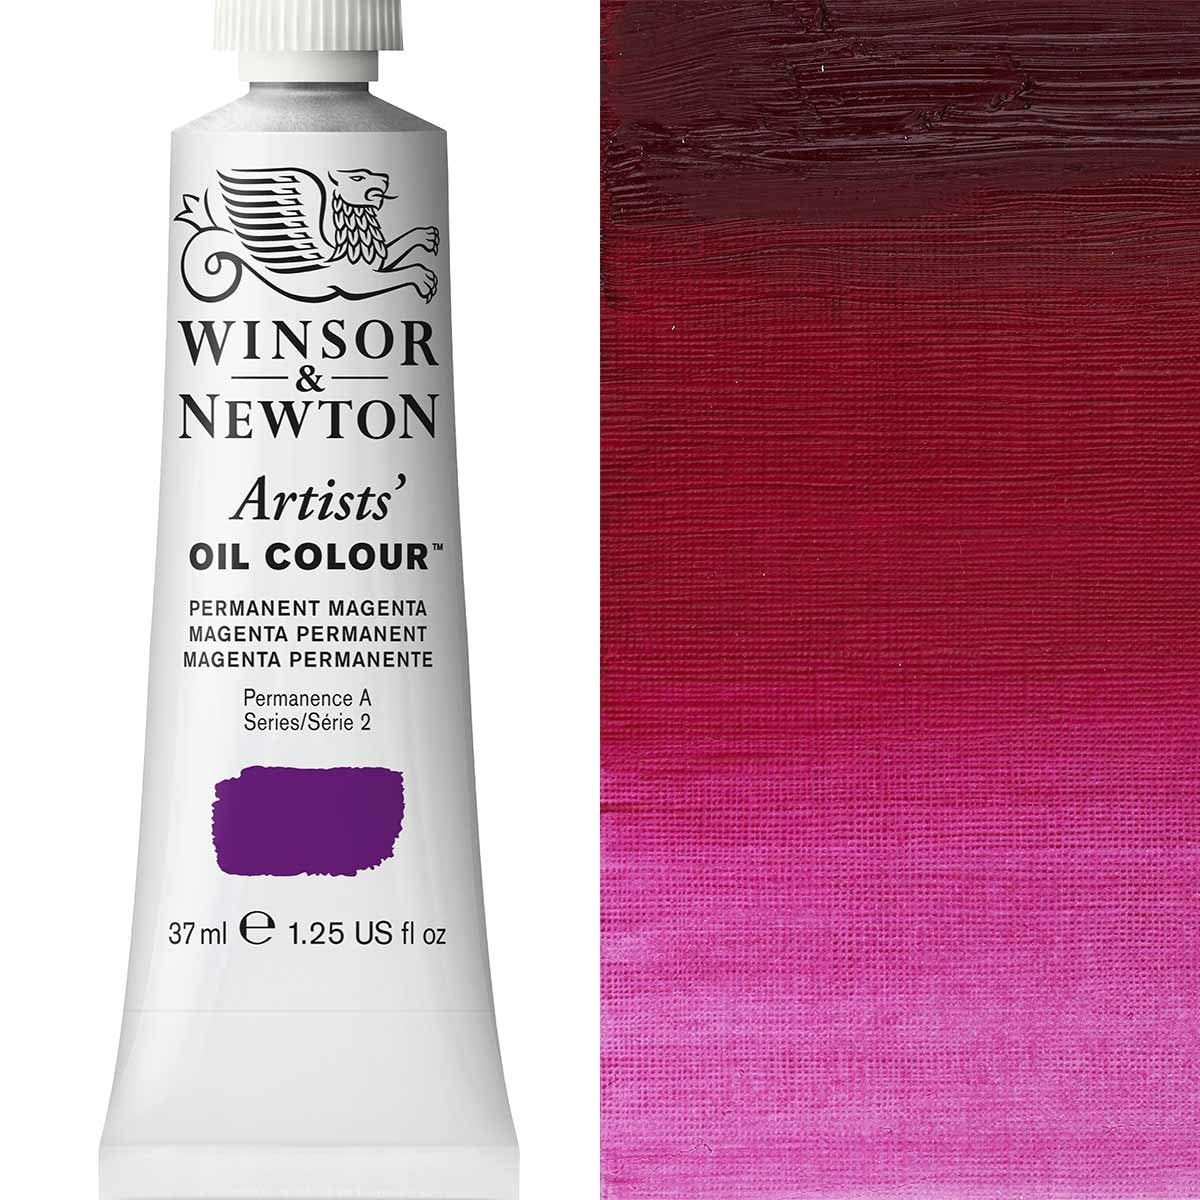 Winsor and Newton - Colore olio degli artisti - 37 ml - Magenta permanente